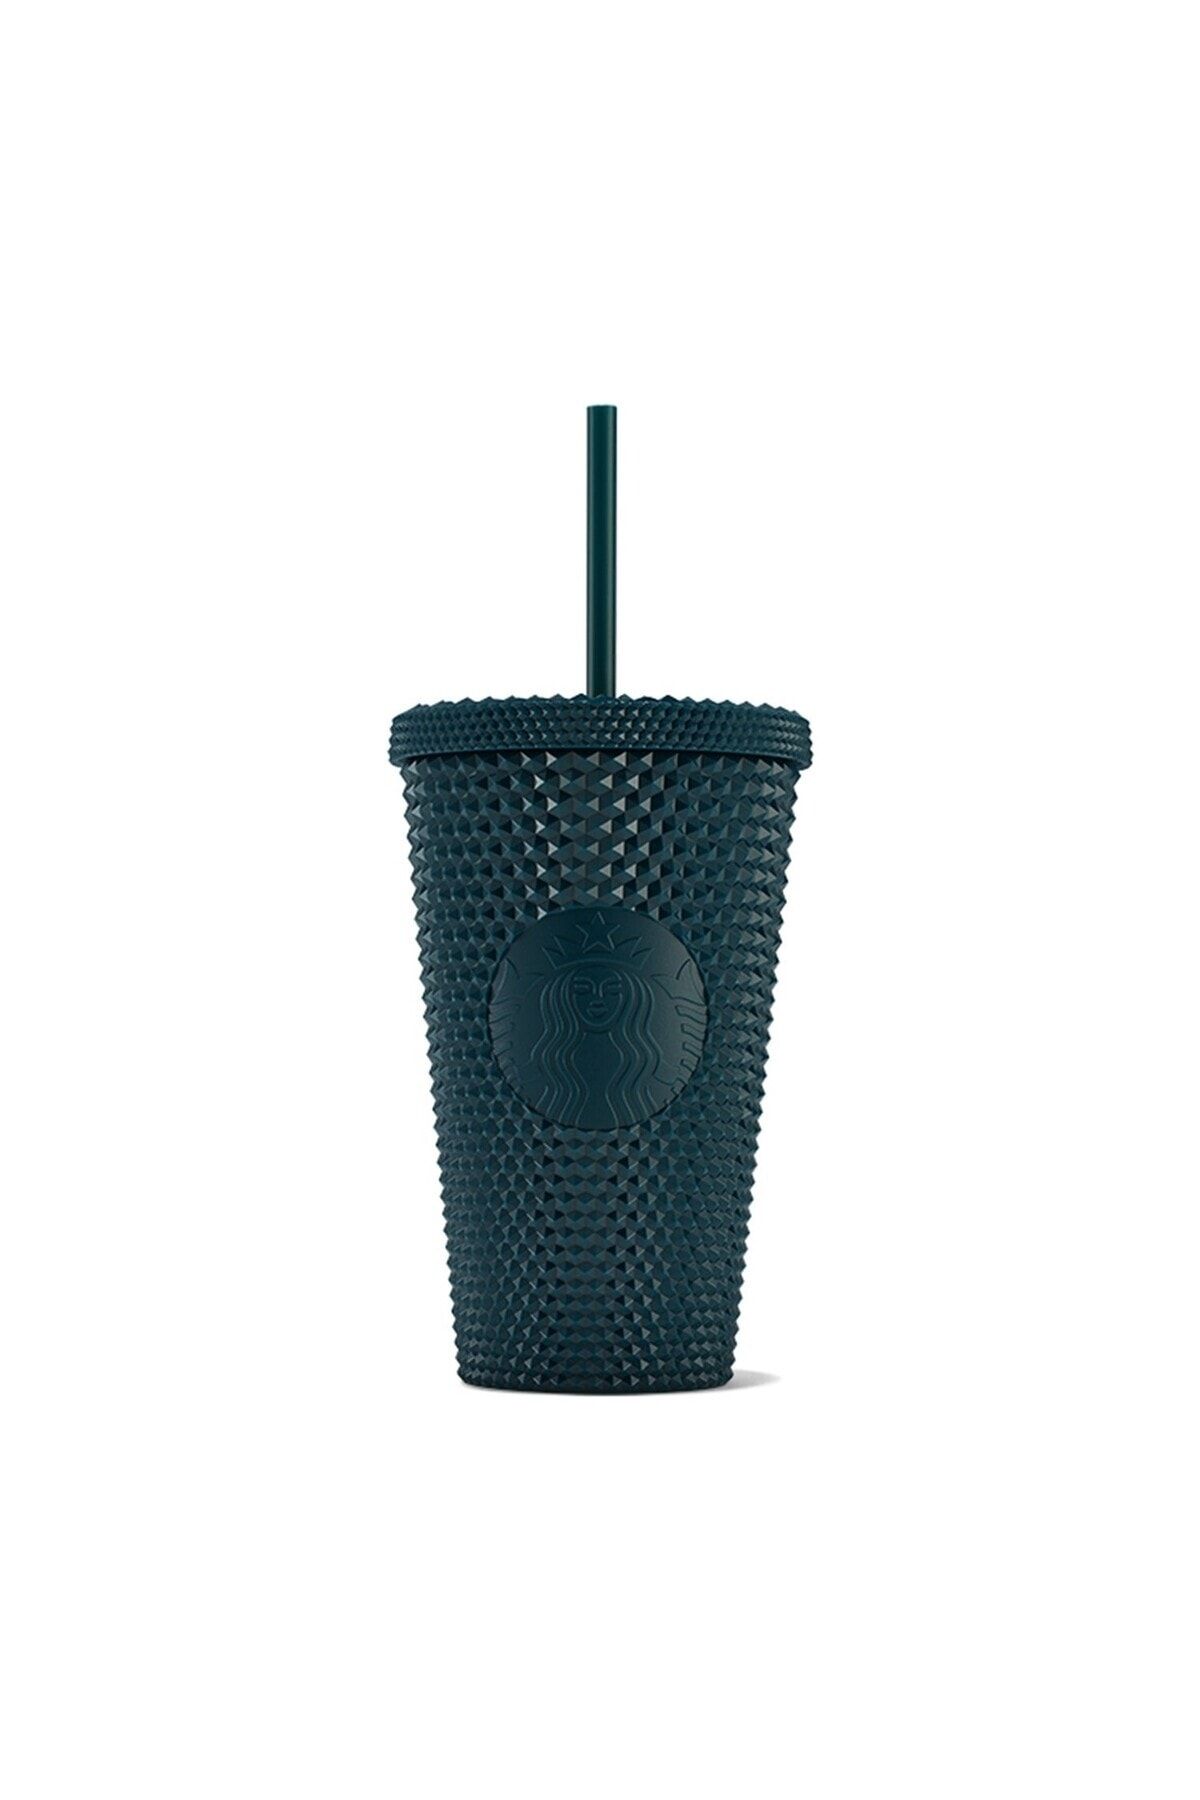 Starbucks Plastik Soğuk Içecek Bardağı - Lacivert - 473 Ml